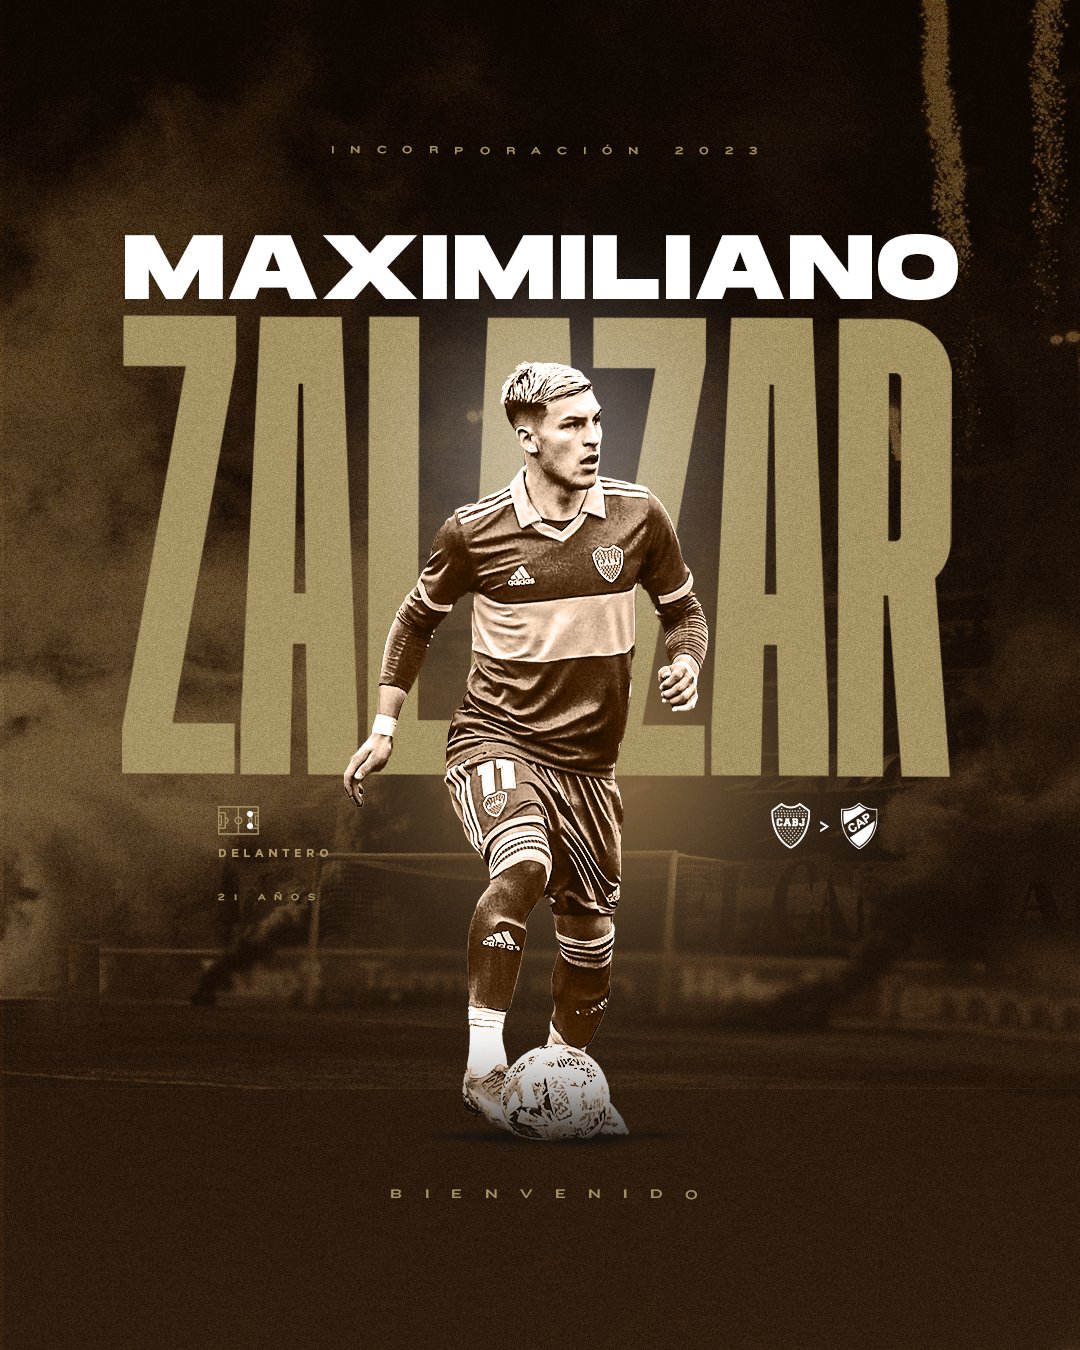 Maxi Zalazar :: Platense :: Player Profile 